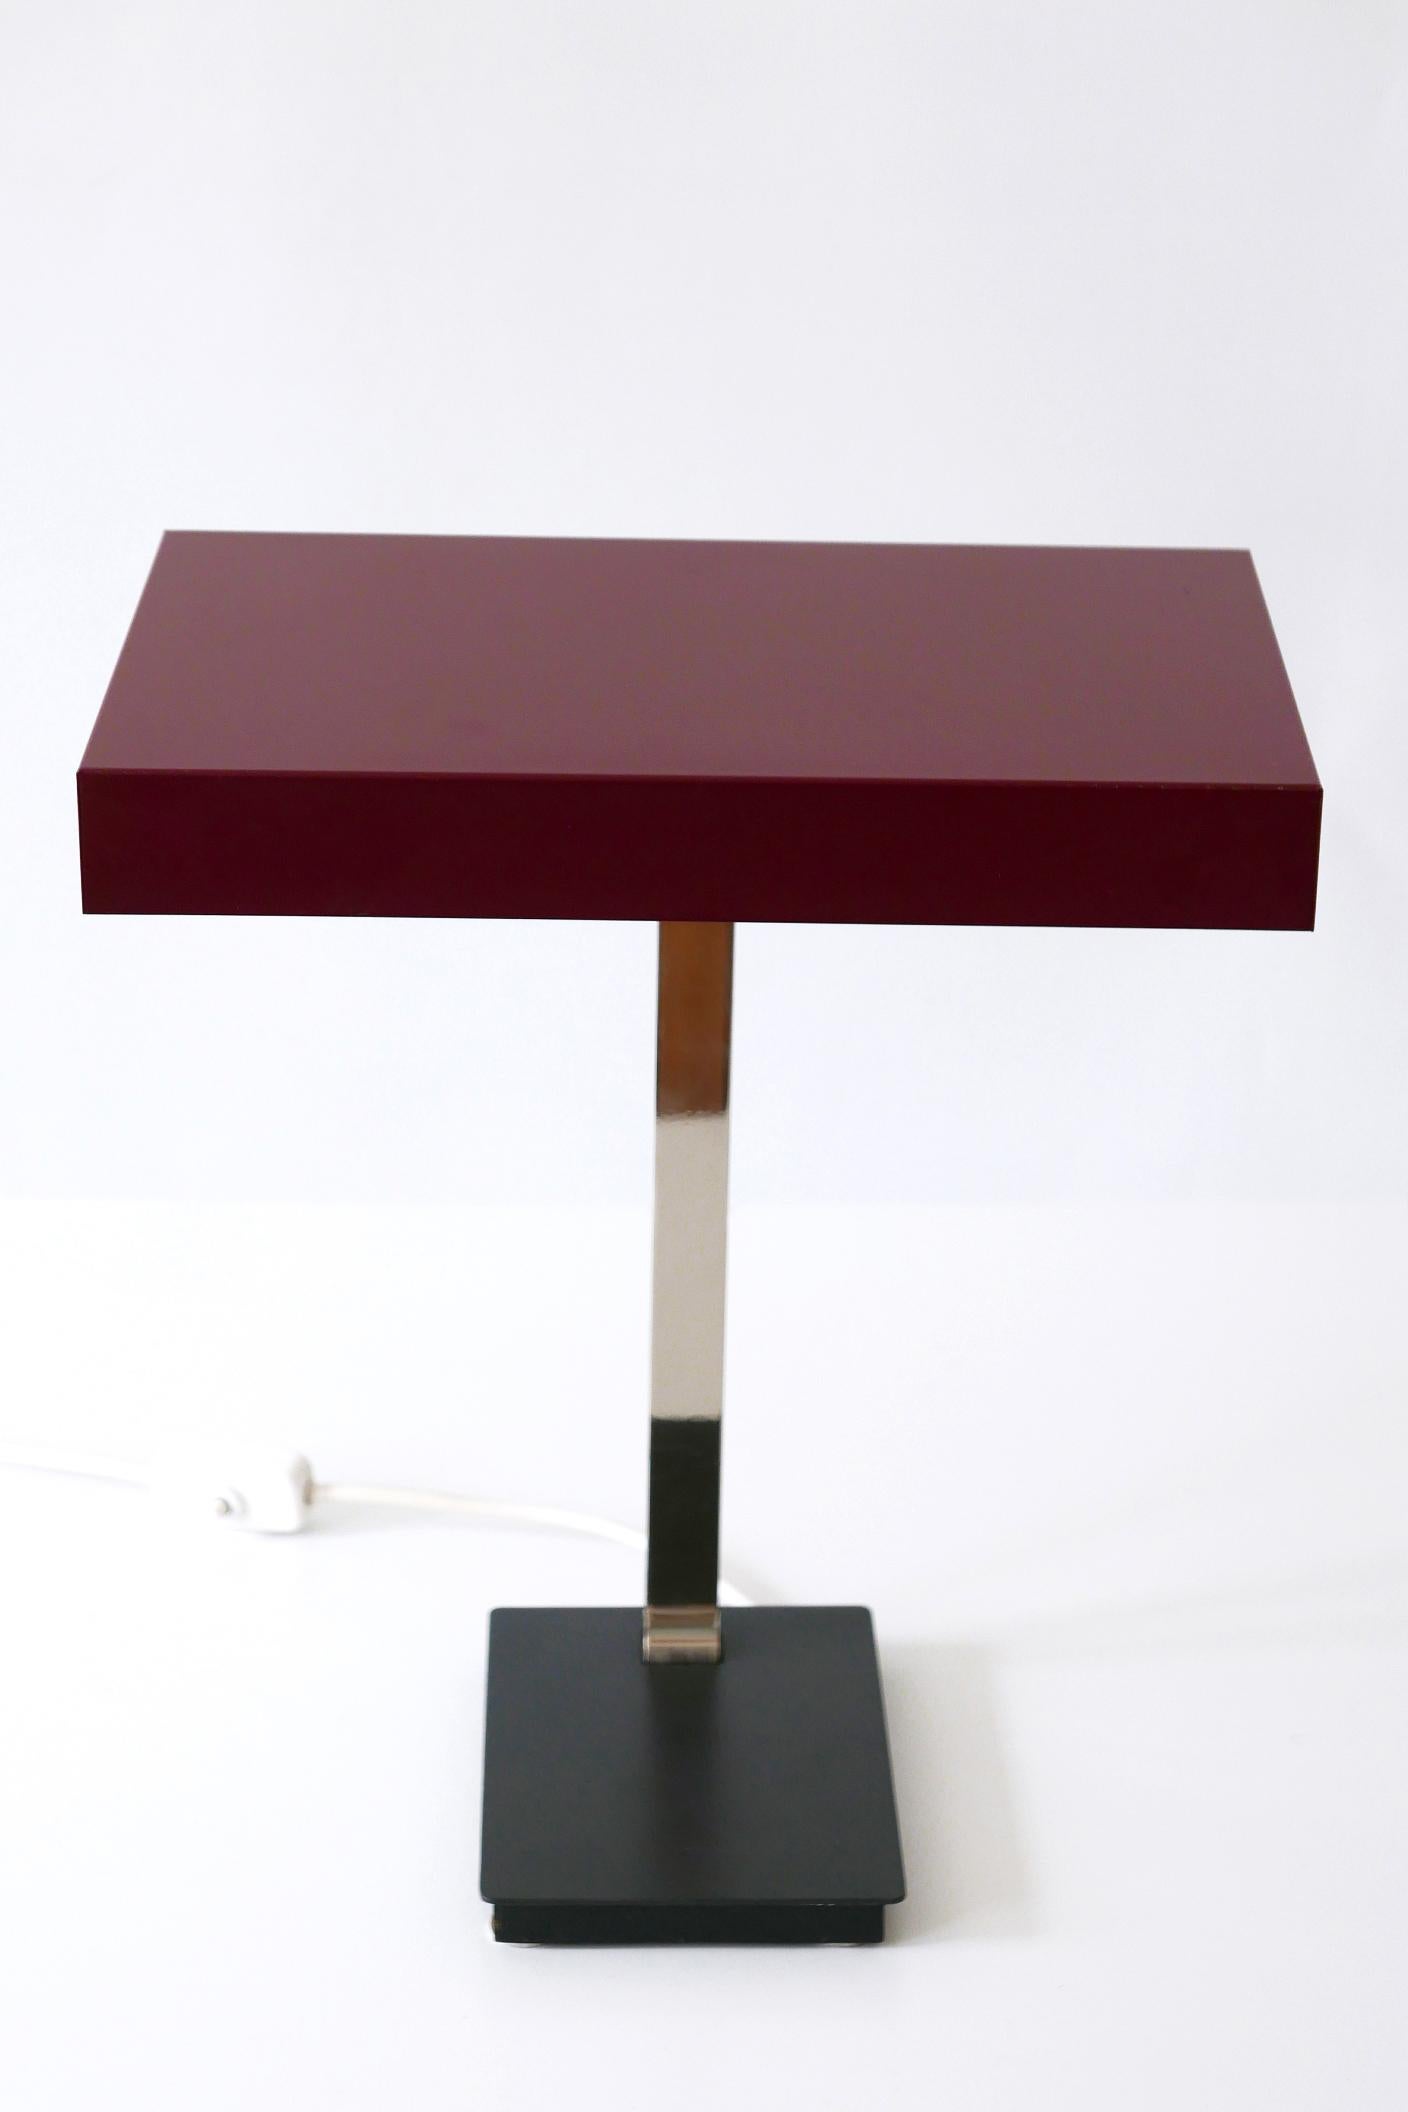 Luxury Mid-Century Modern President Table Lamp by Kaiser Leuchten 1960s Germany For Sale 4